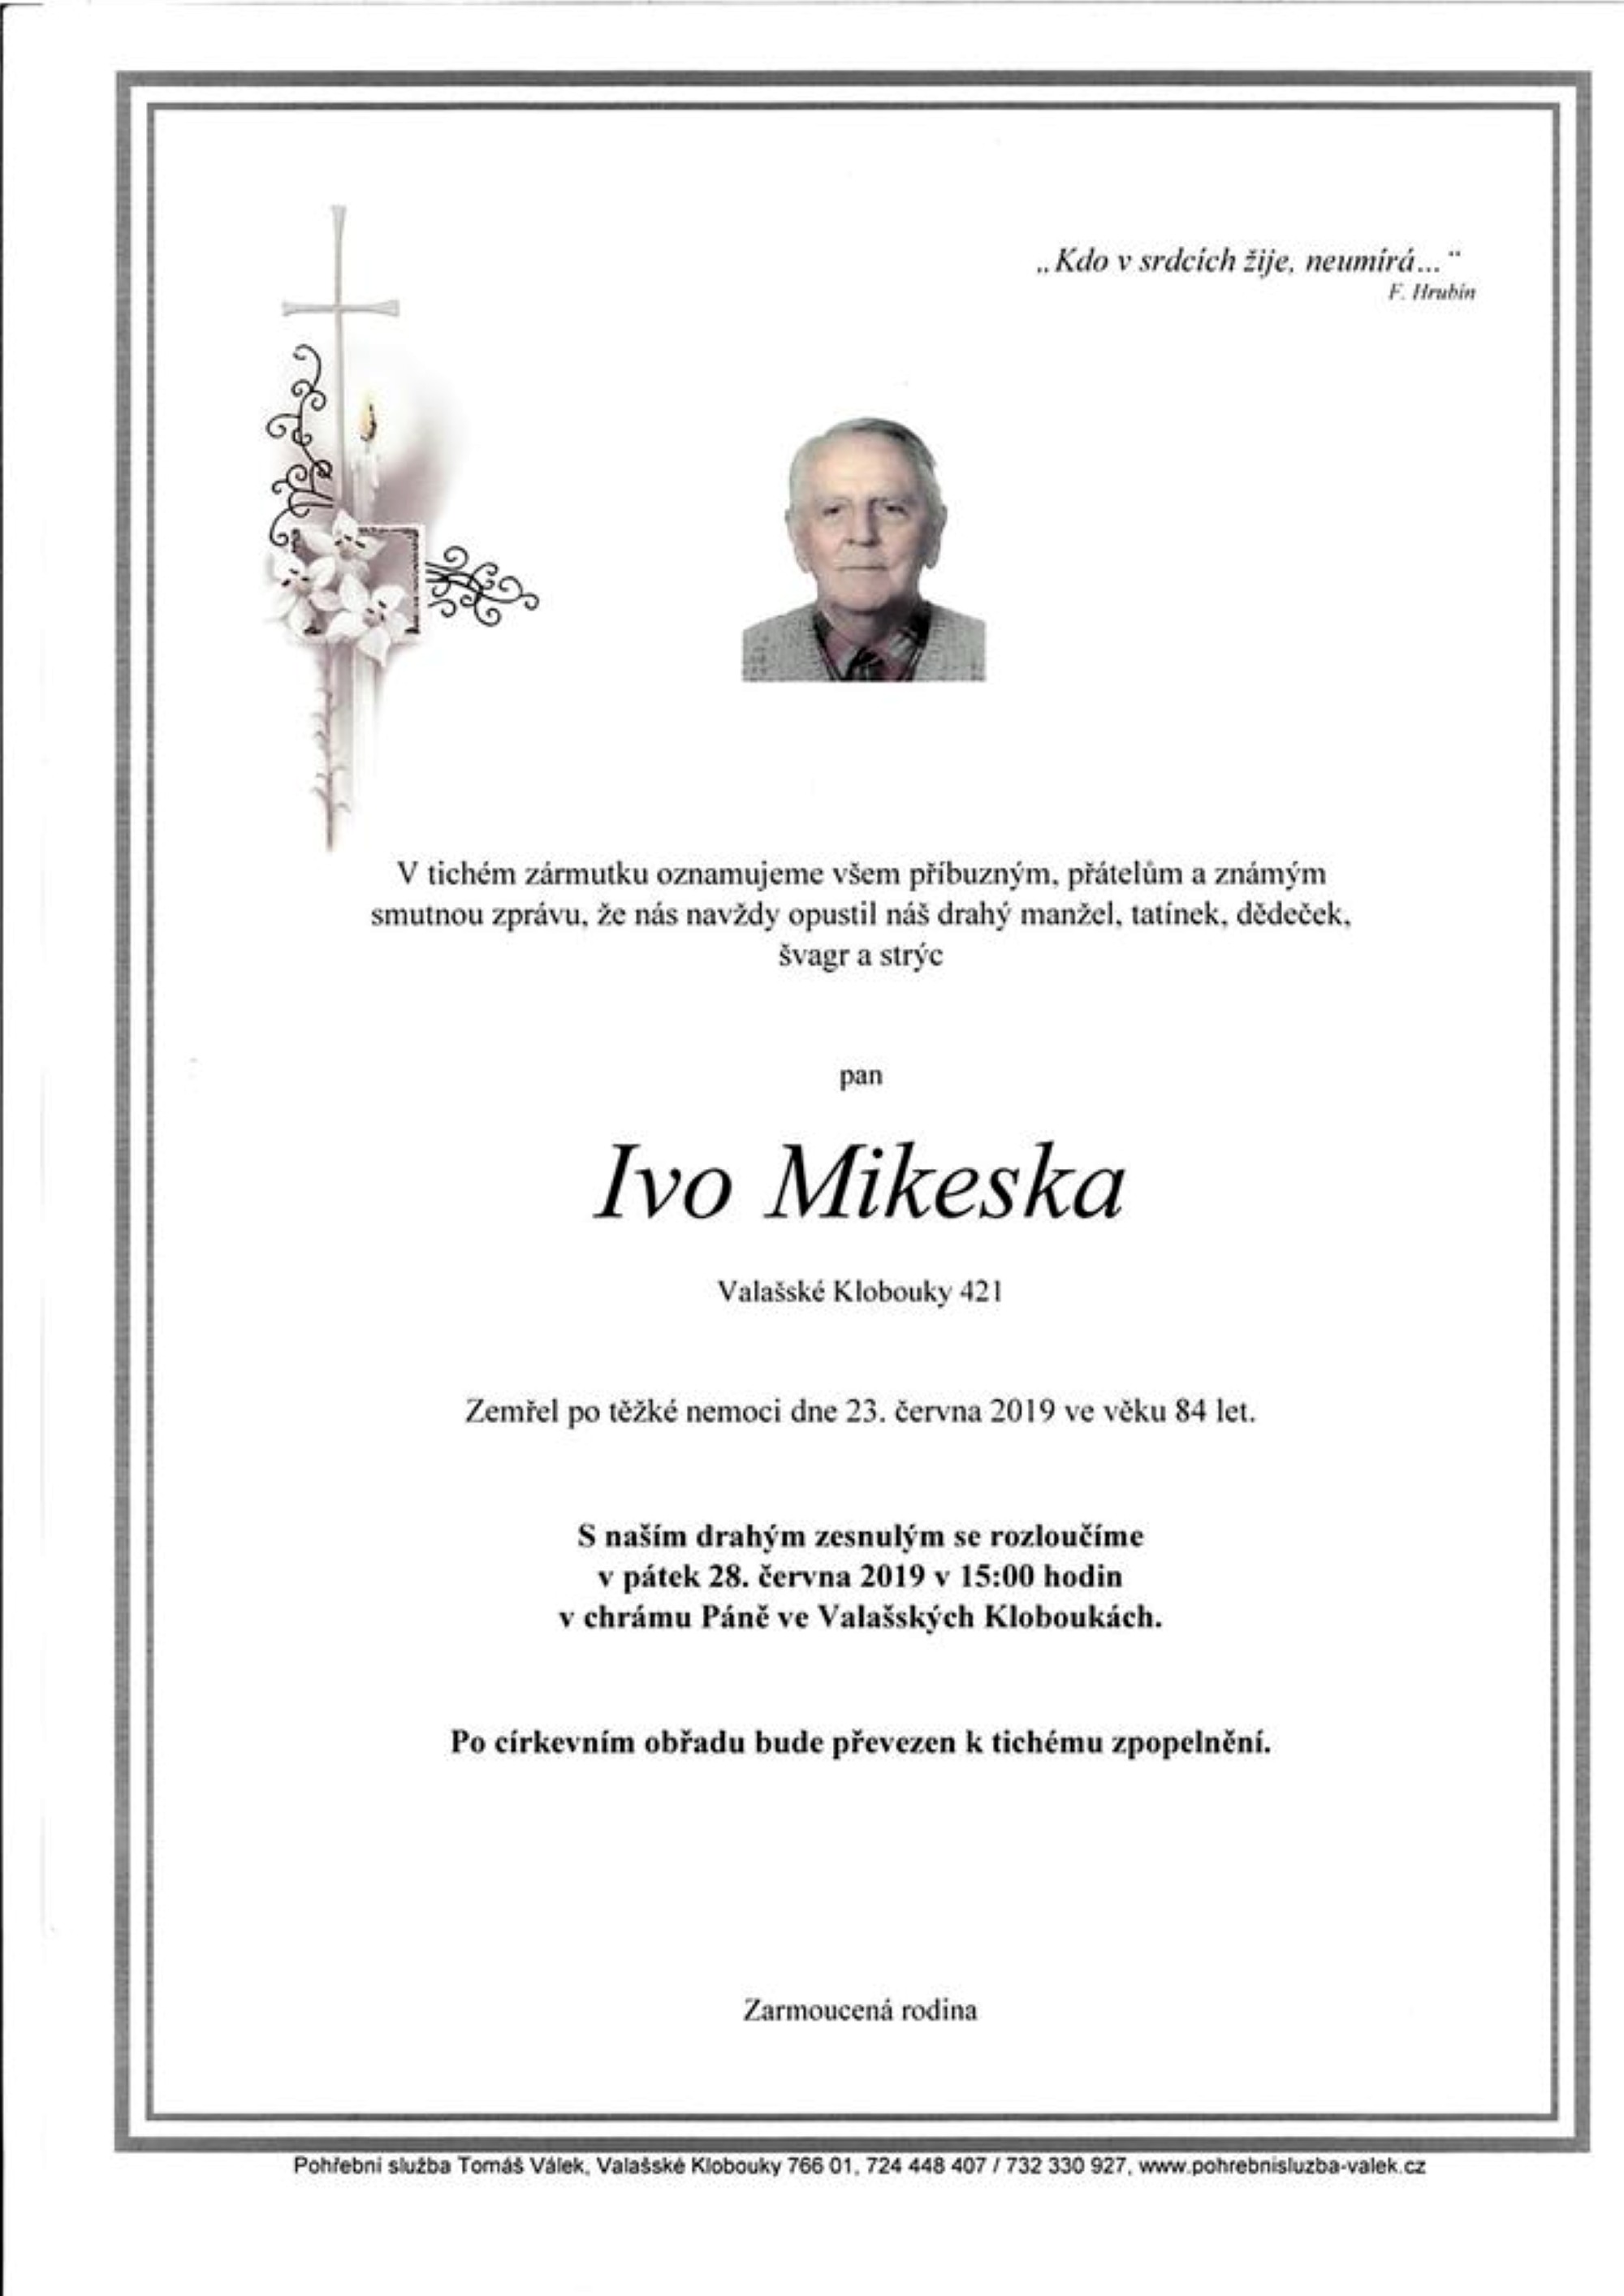 Ivo Mikeska